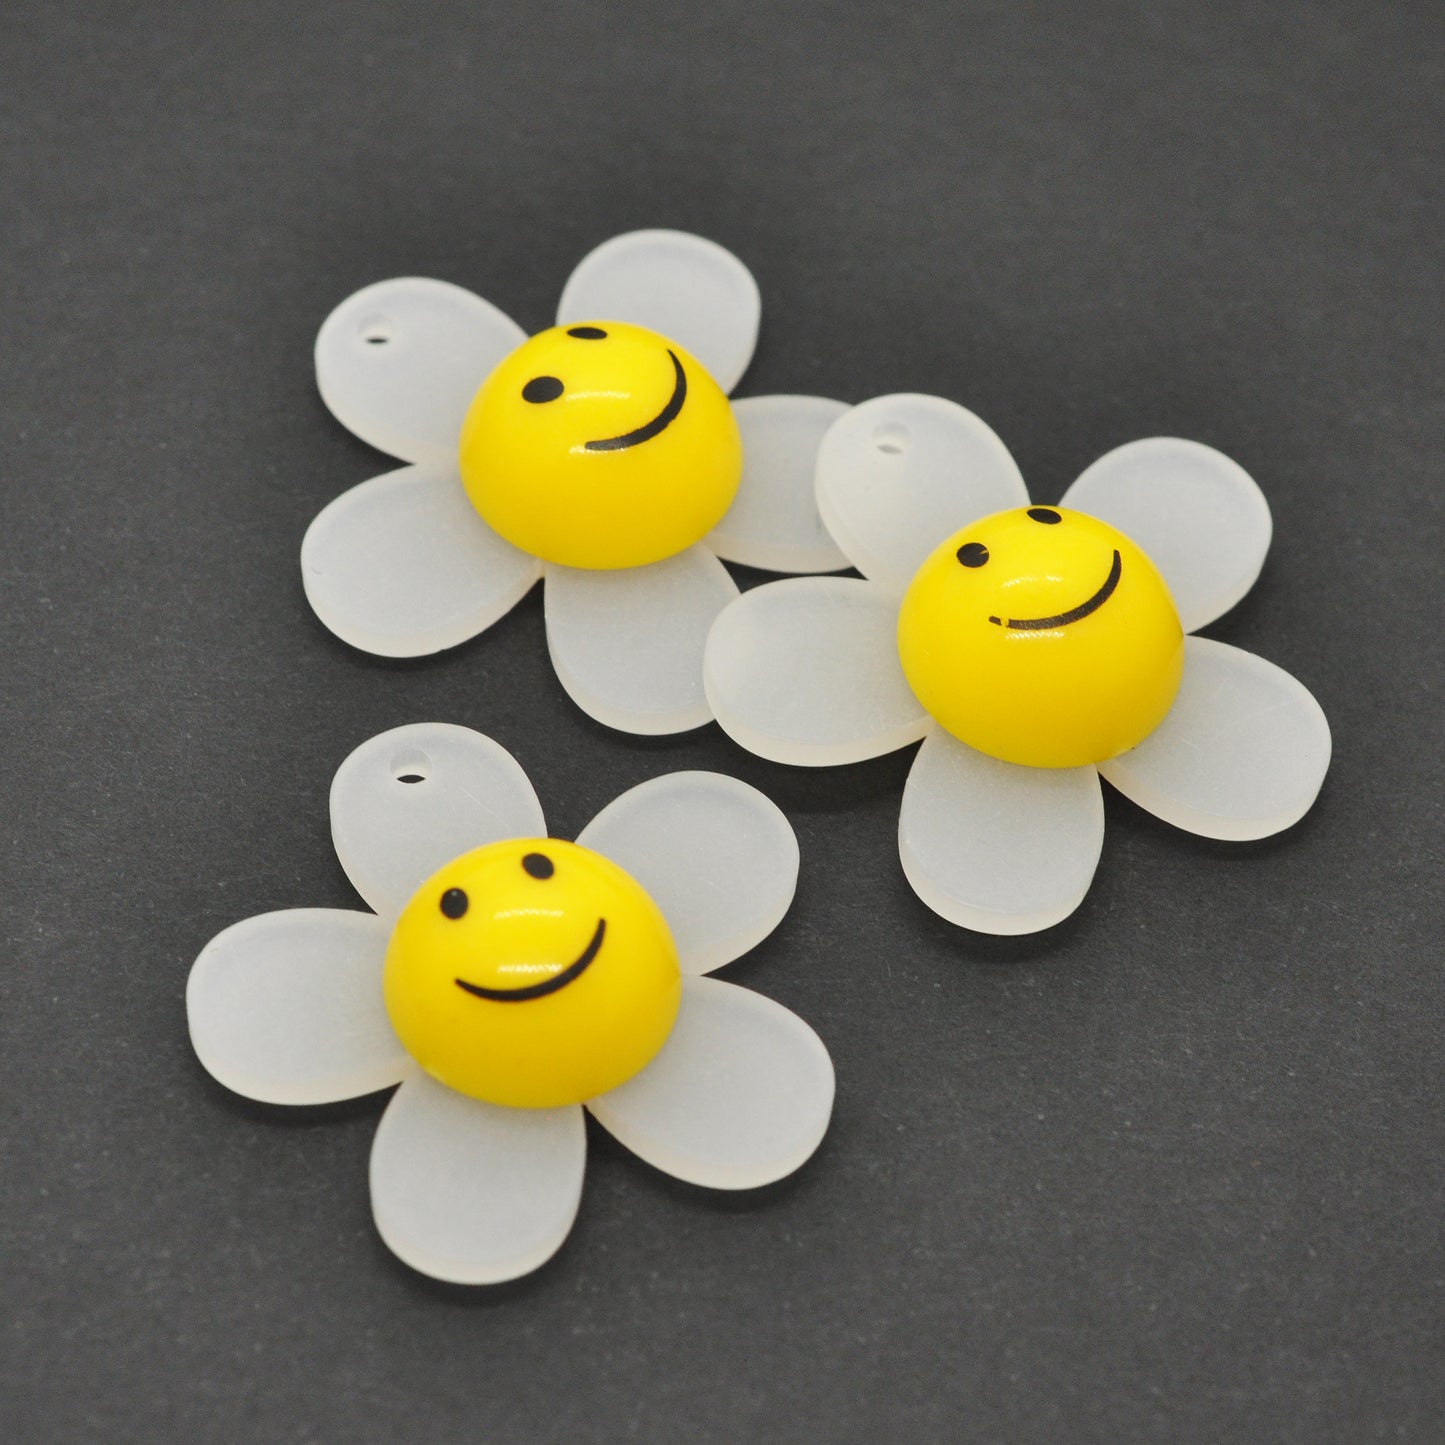 Acryl Anhänger Smiley Sonnenblume / gelb / 30 mm